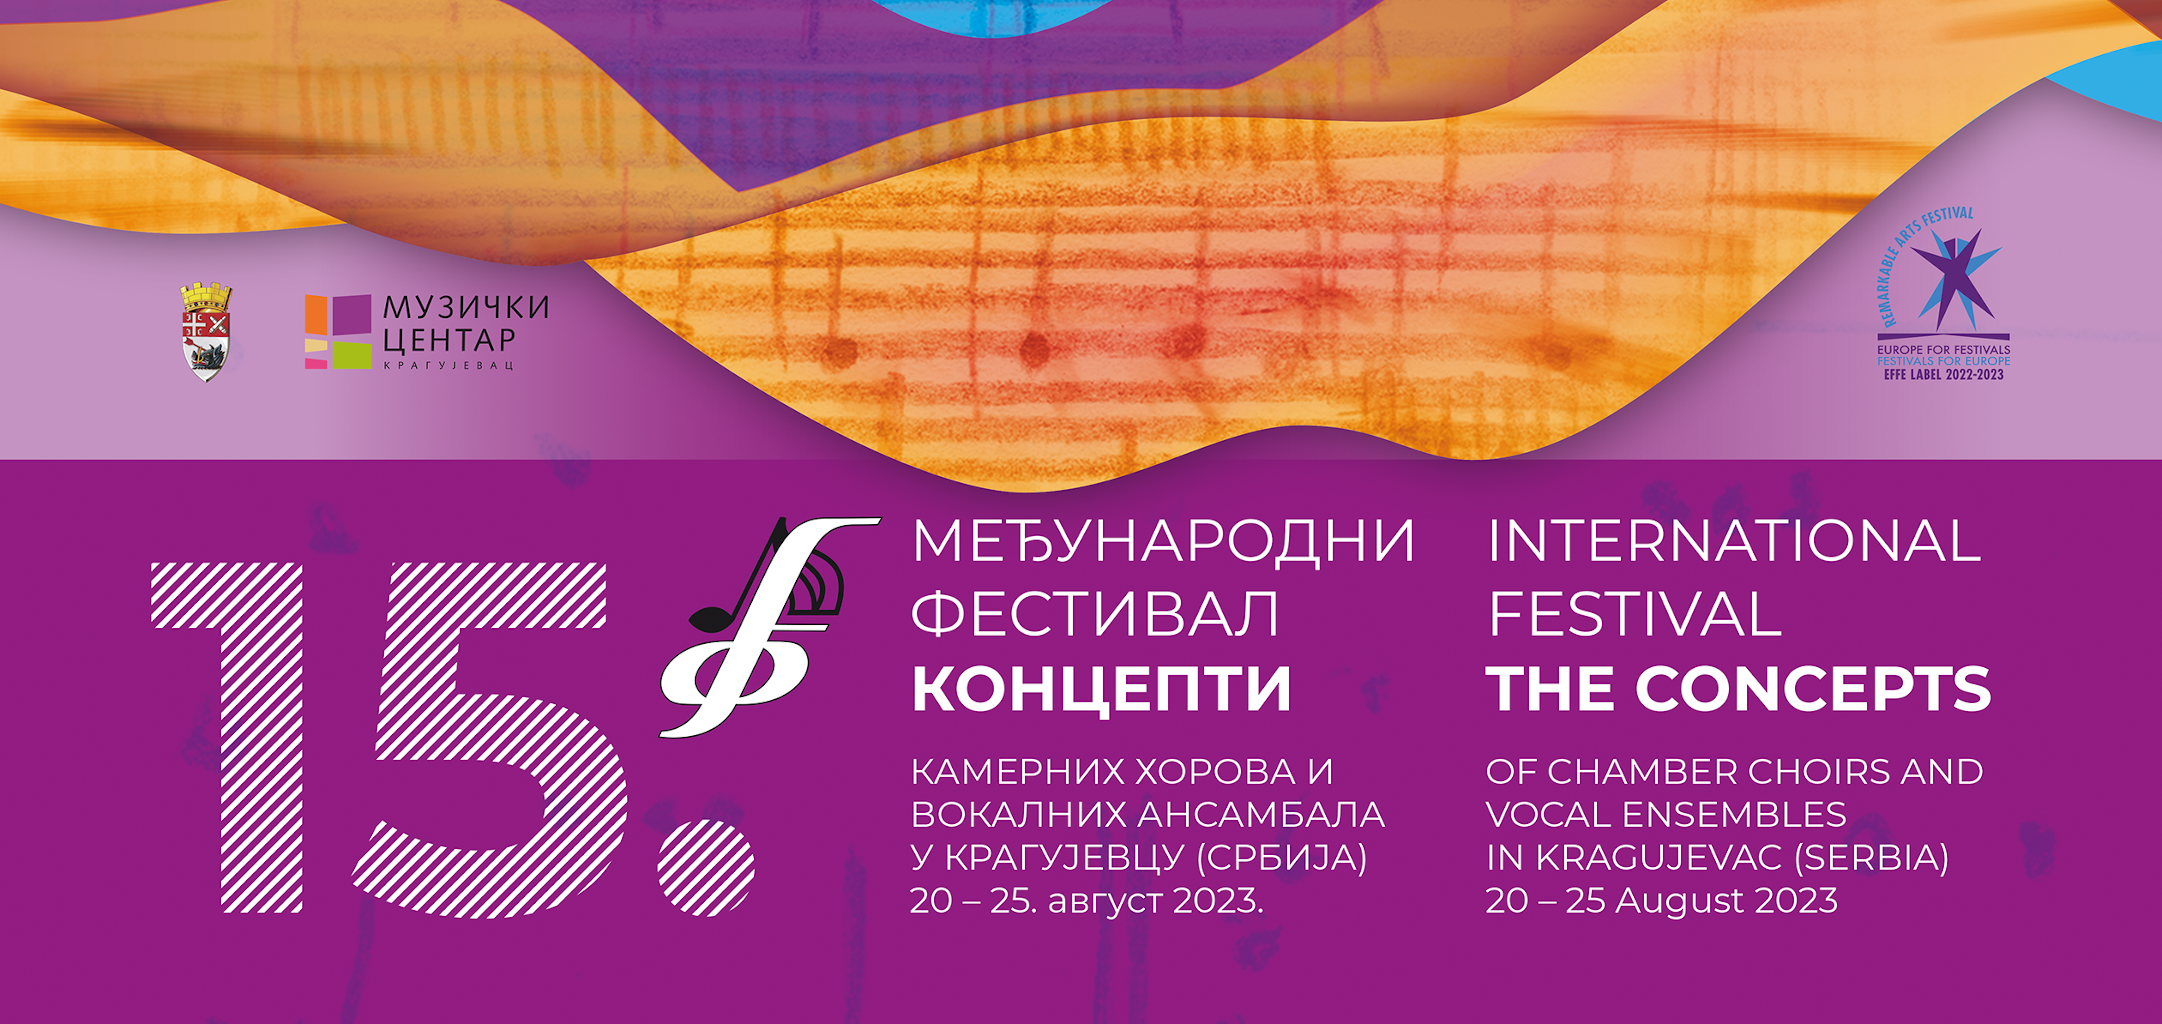 Међународни фестивал камерних хорова 